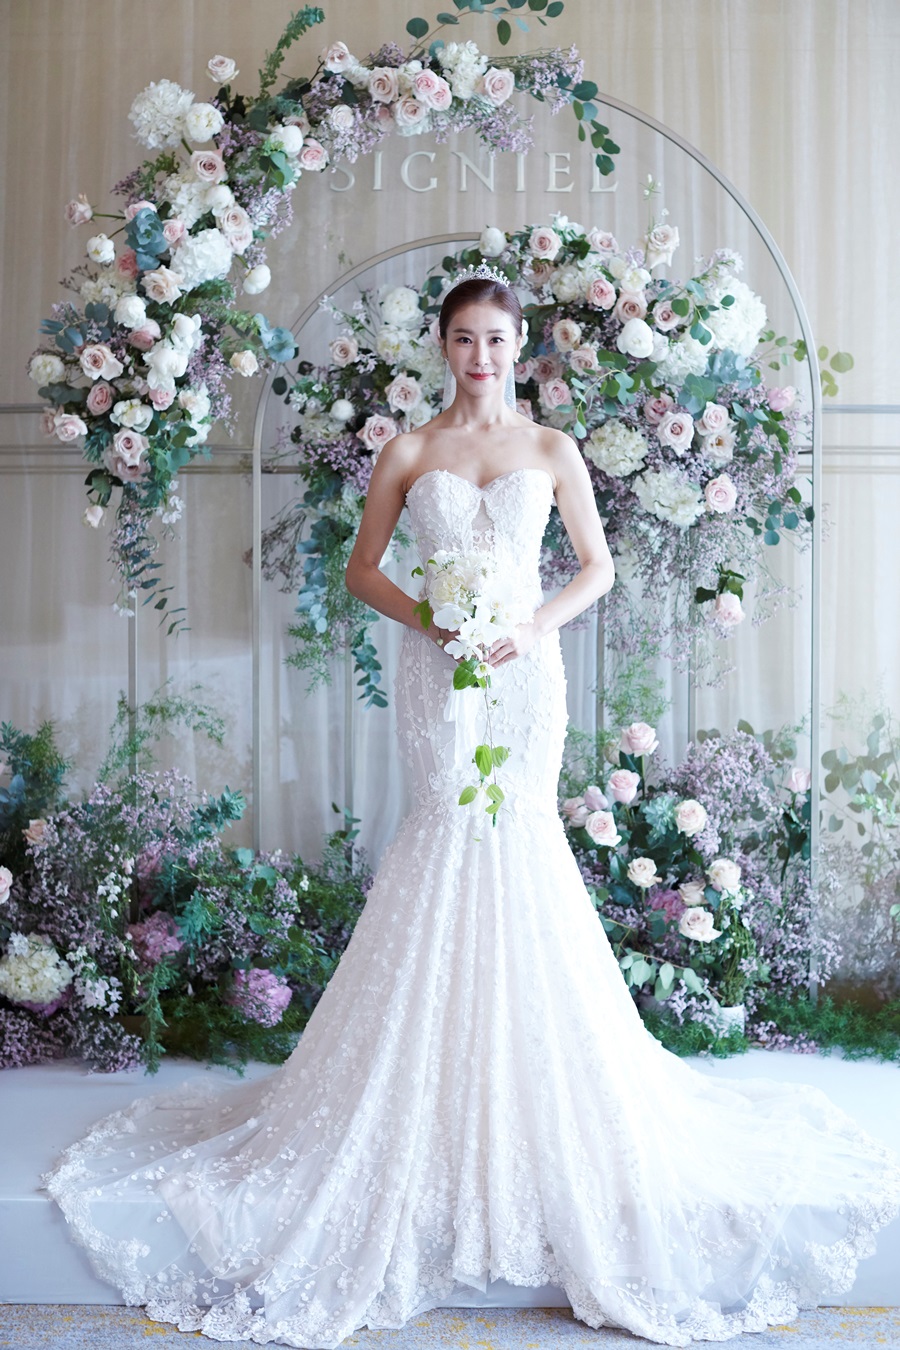 ハン・ダガム、結婚式の写真公開…「女神の美しさあふれる純白ドレス」